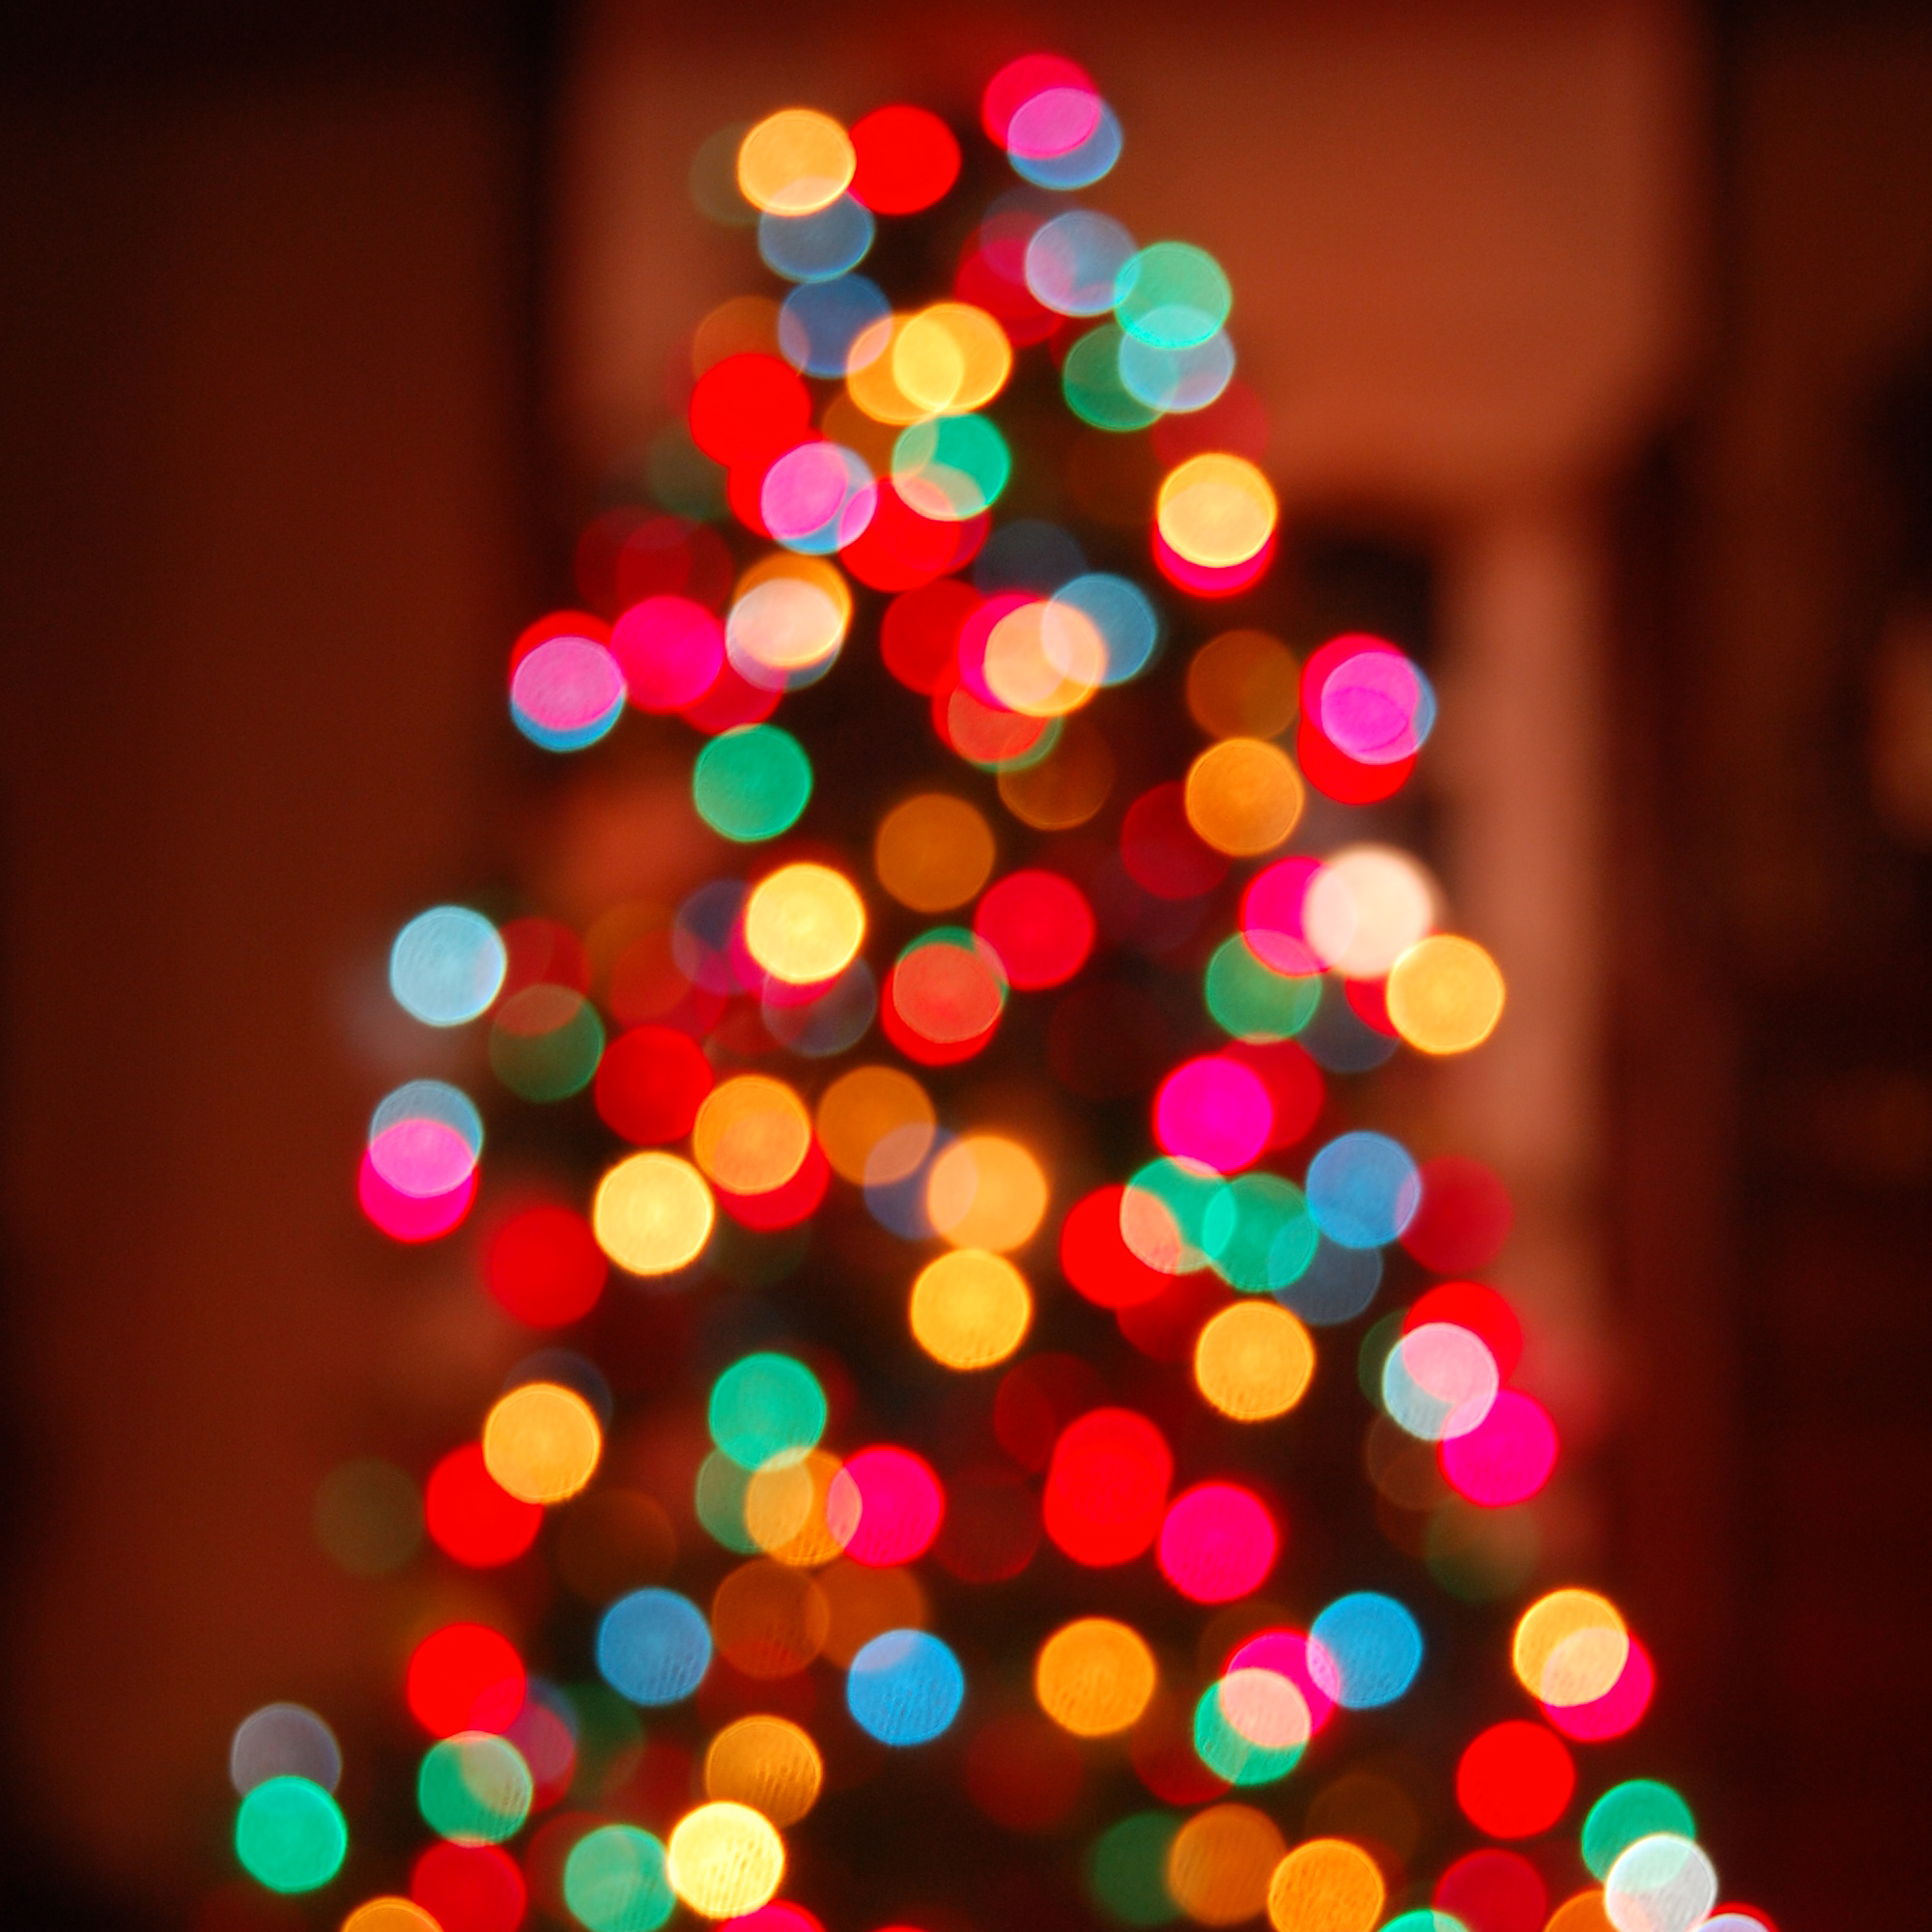 L’arbre de Noël du rectorat